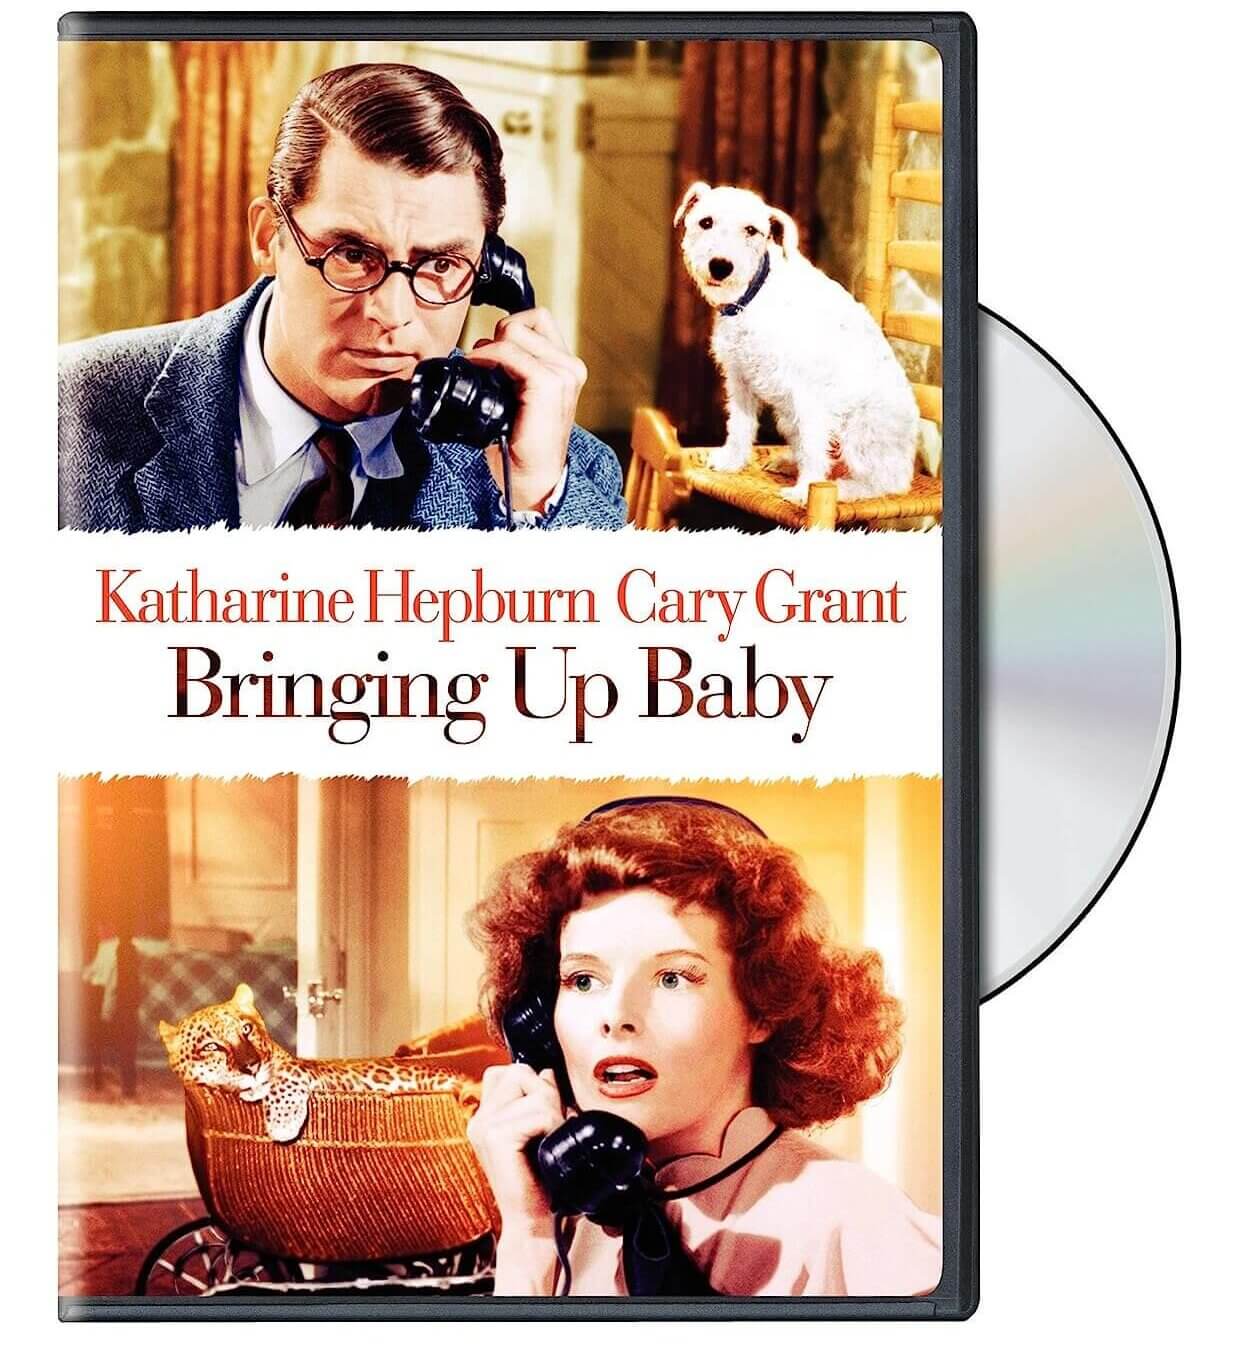 "Bringing Up Baby" (1938)